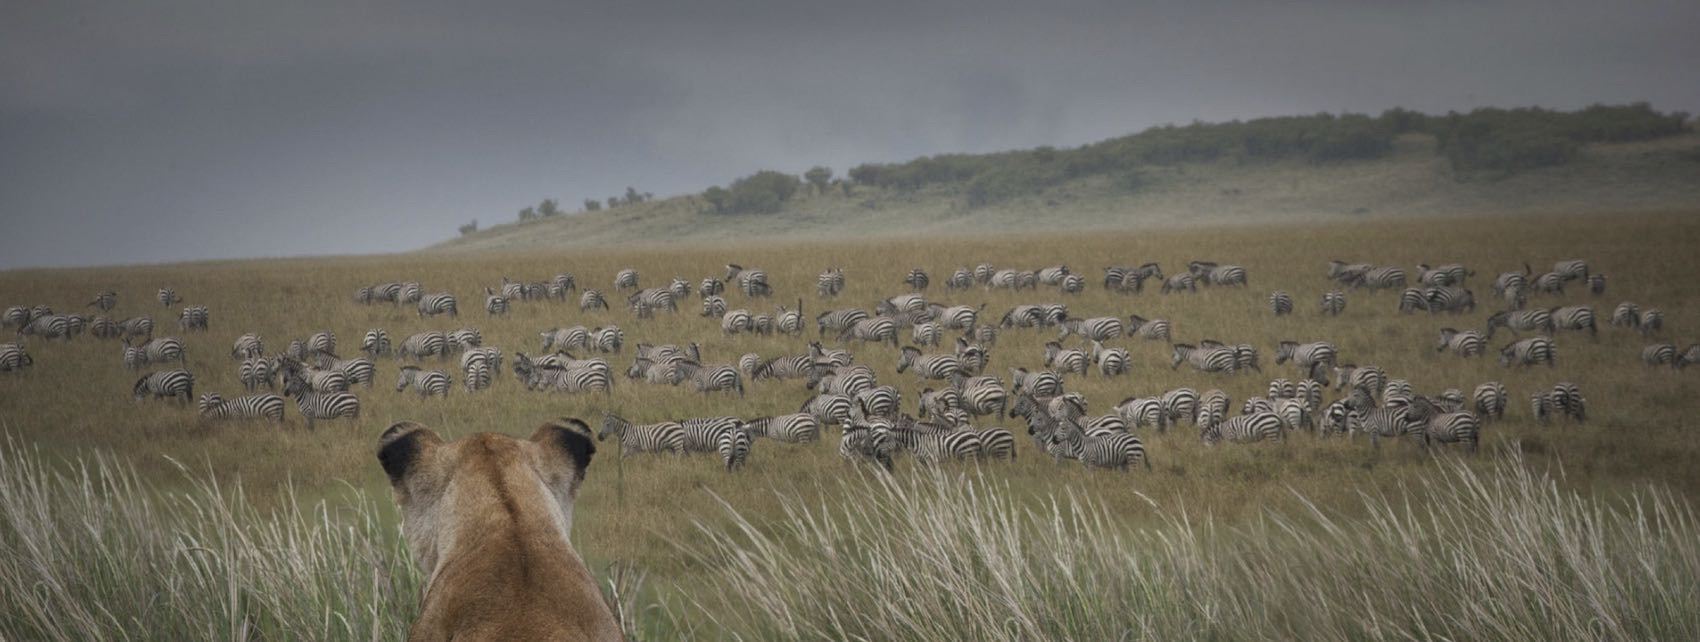 Lionne qui chasse des zebres dans la savane